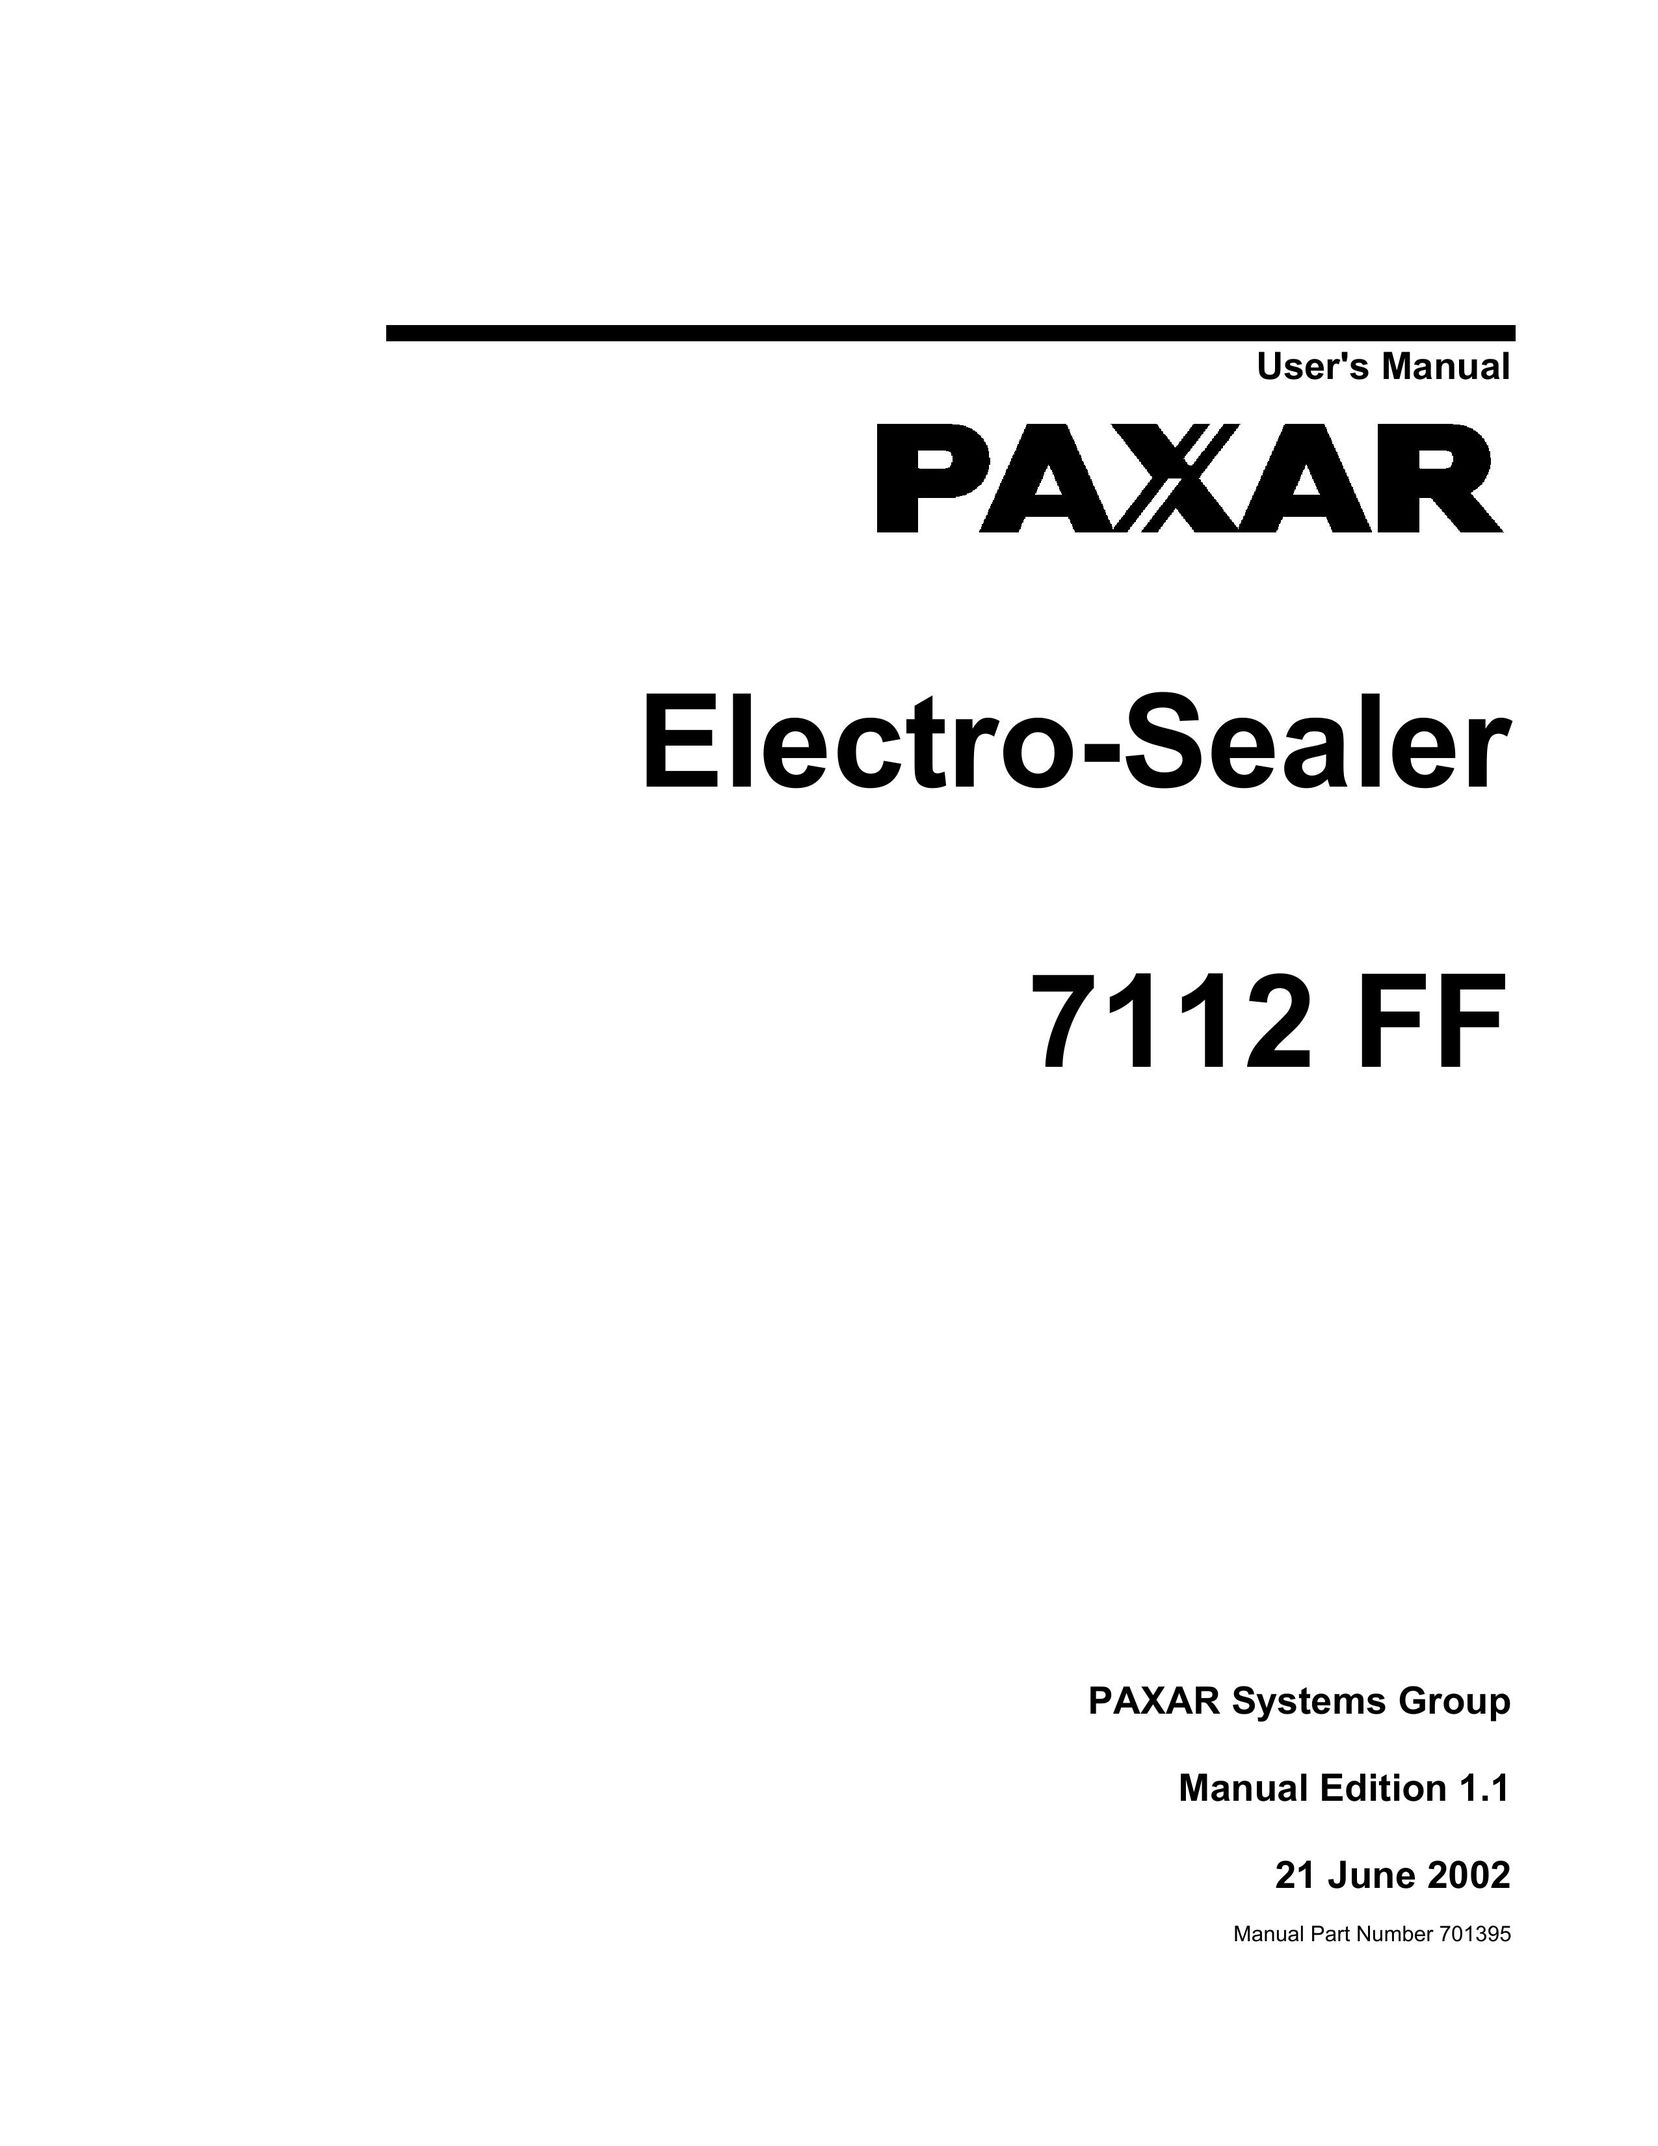 Paxar electro-sealer Car Seat User Manual